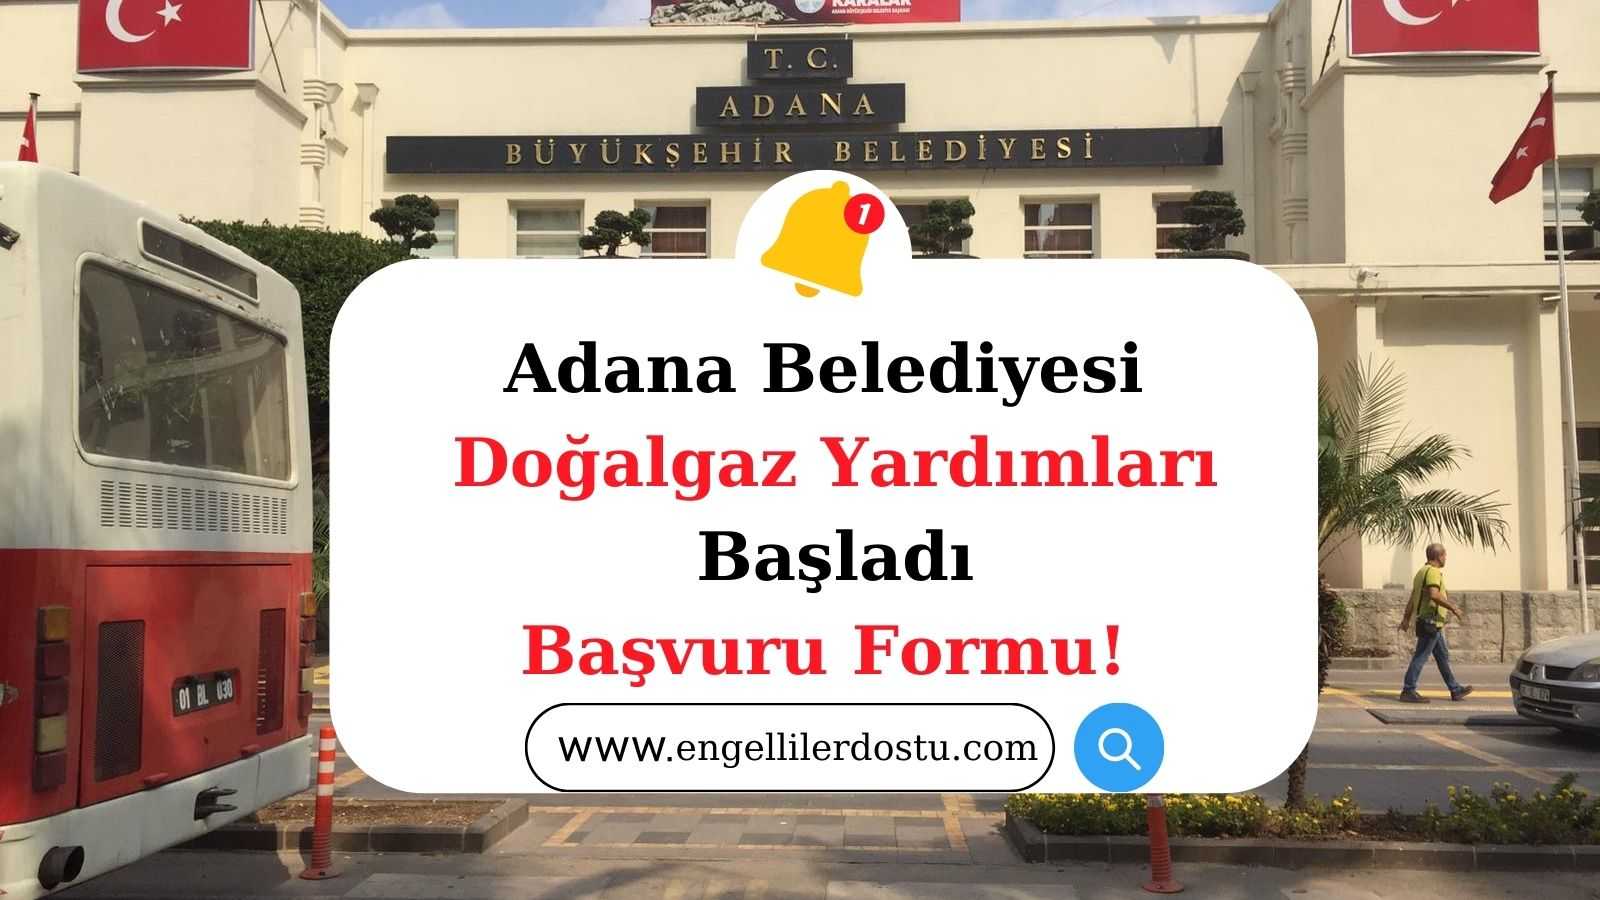 Adana Belediyesi Doğalgaz Yardımı Başvurusu